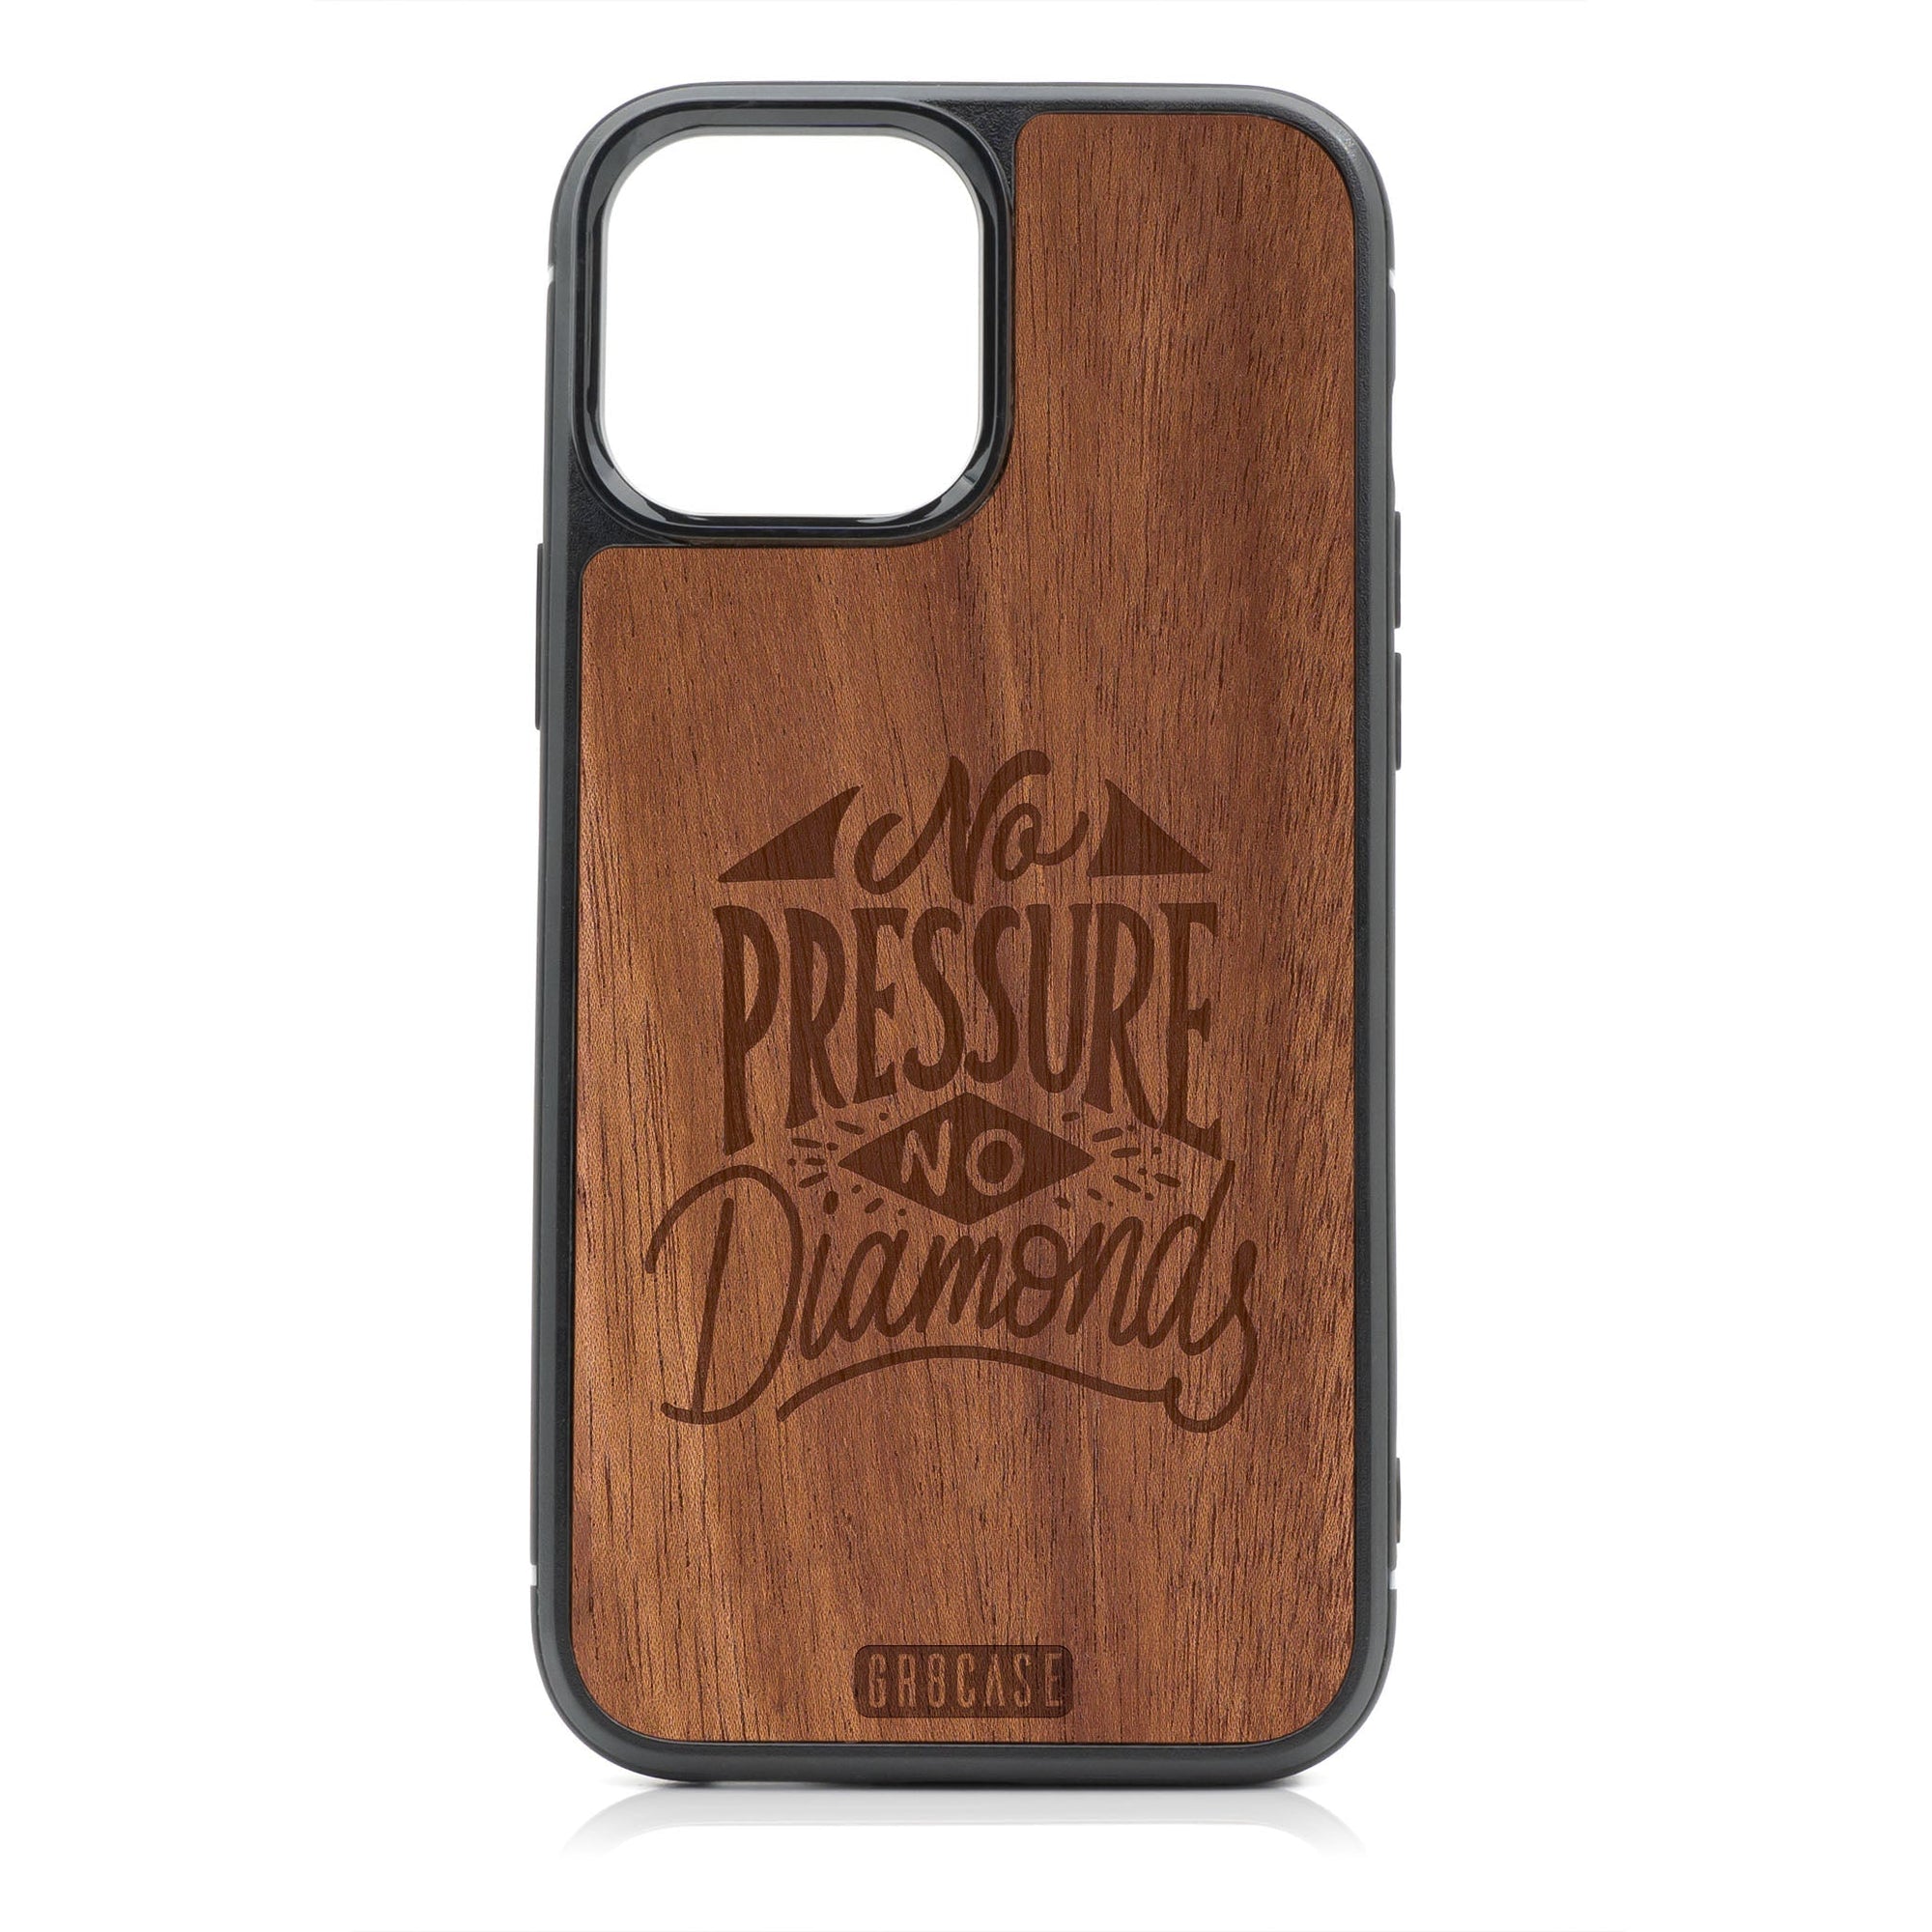 No Pressure No Diamonds Design Wood Case For iPhone 15 Pro Max